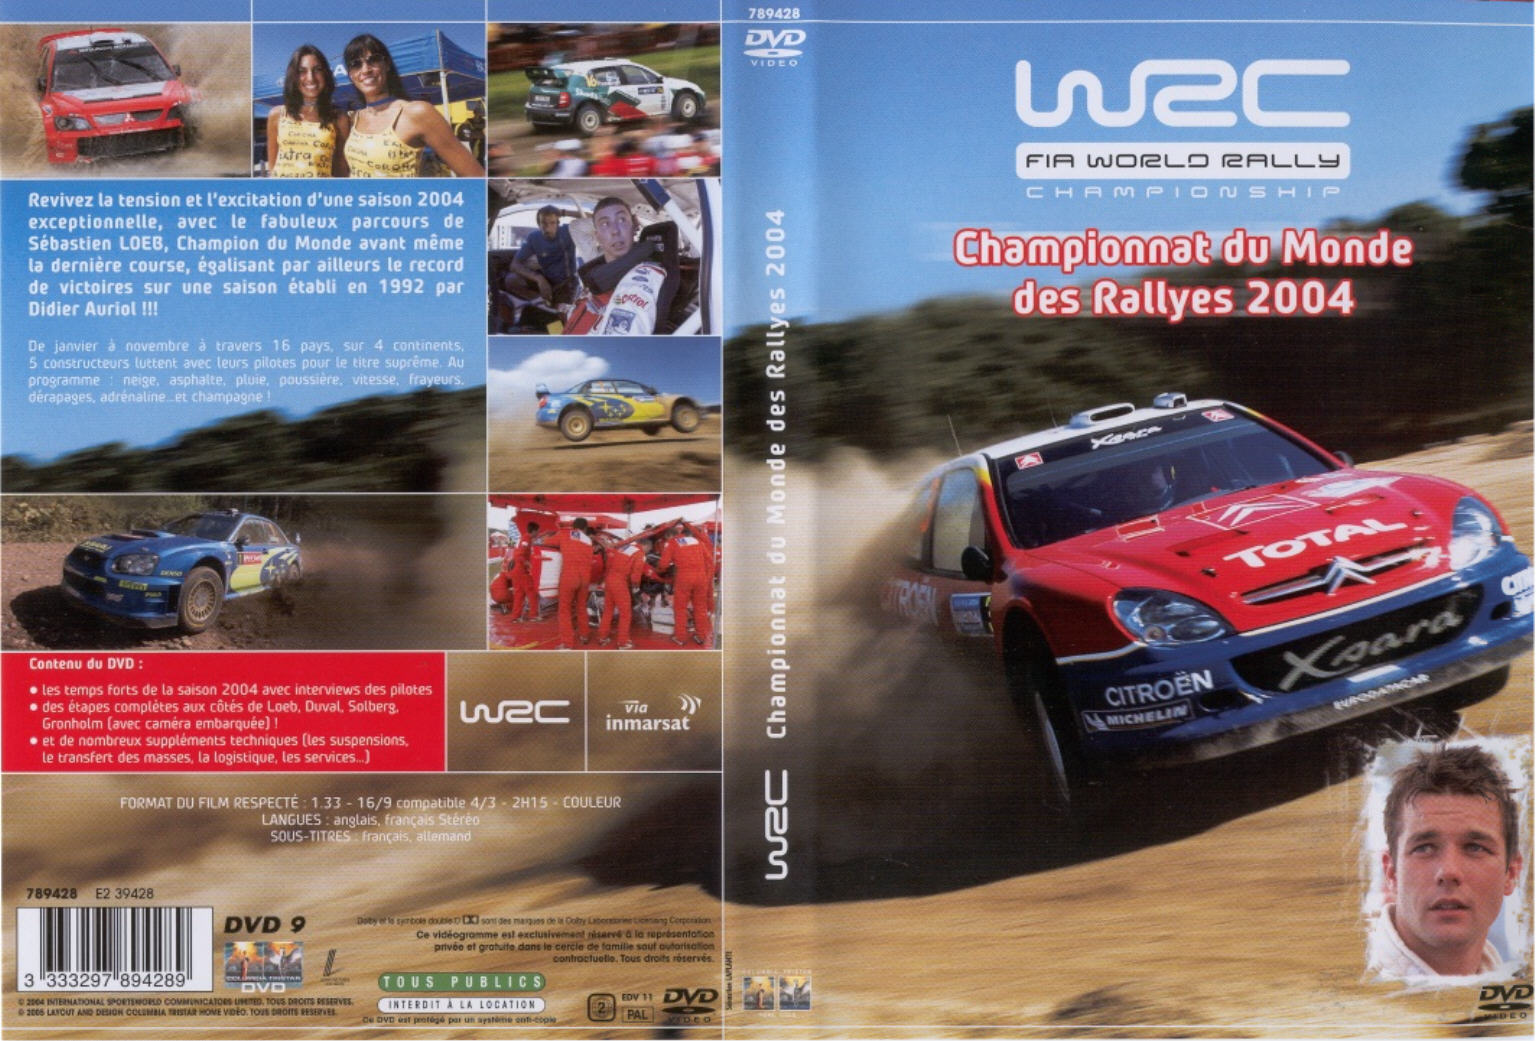 Jaquette DVD WRC - Championnat du monde des rallye 2004